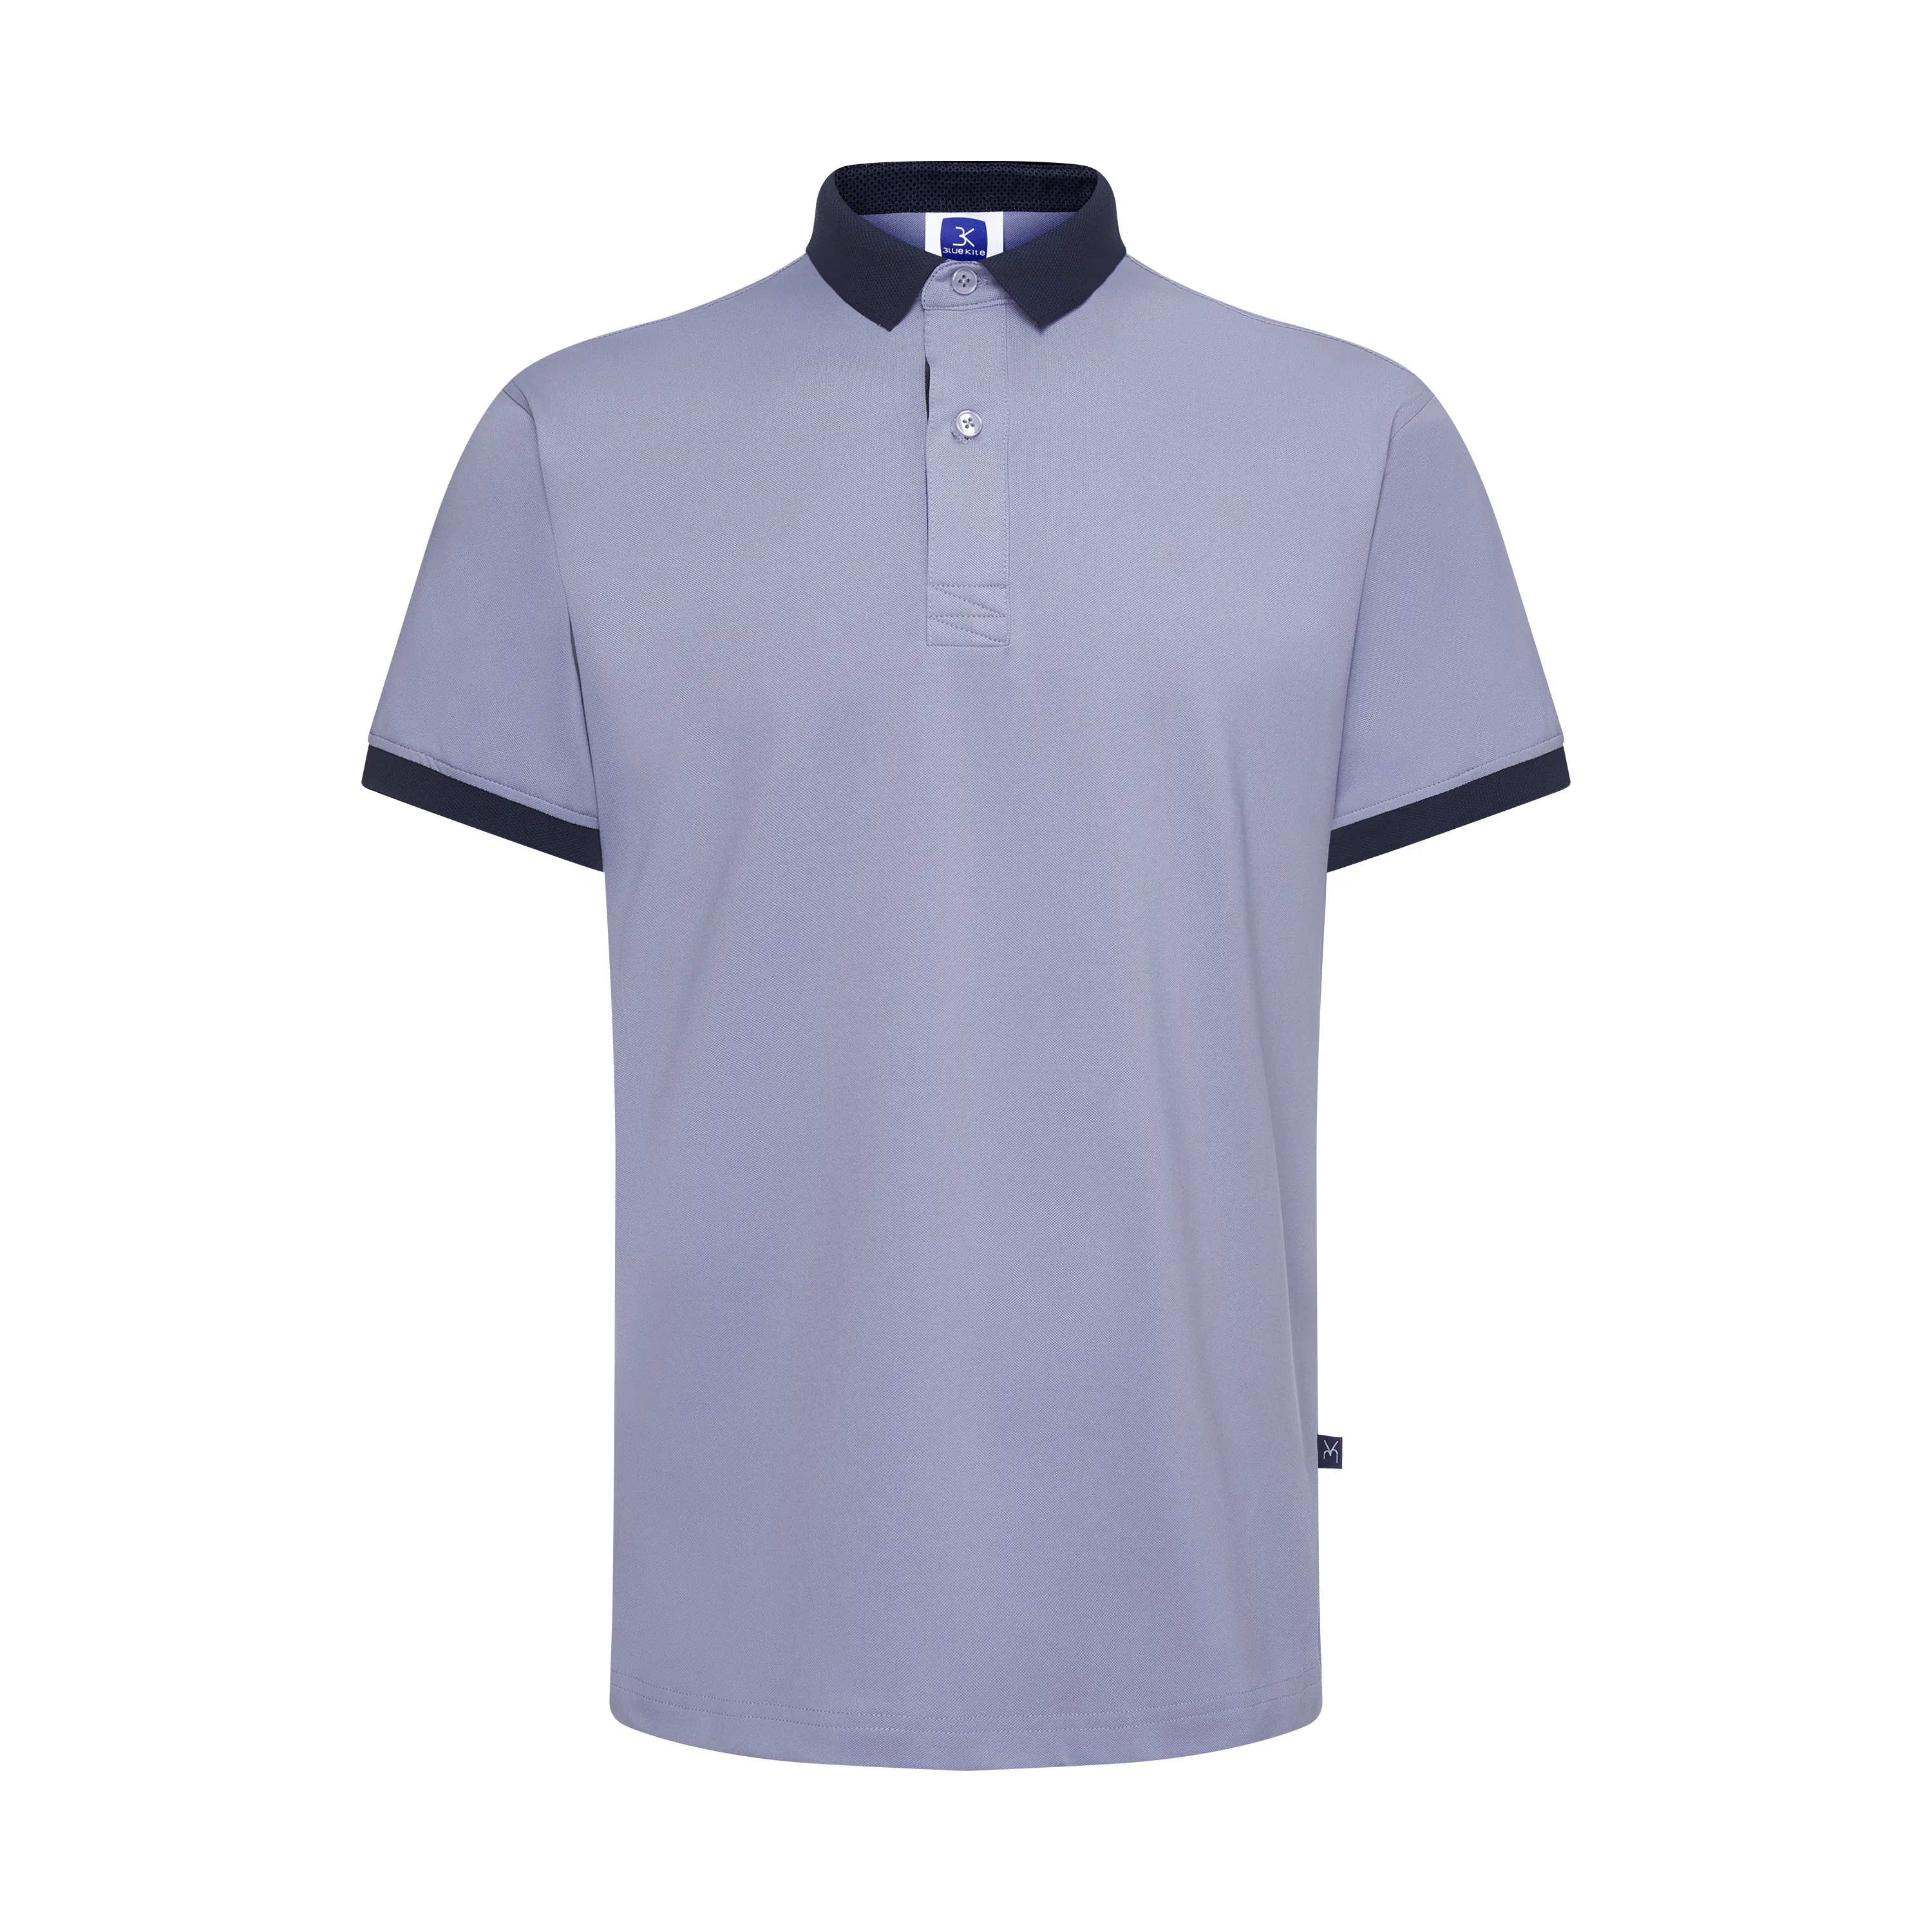 पुरुषों के लिए कपड़े कम कीमत वाले युगल पोलो शर्ट पोलो शर्ट कस्टम टैन फाम जिया प्रीमियम पोलो शर्ट वियतनामी निर्माता द्वारा निर्मित